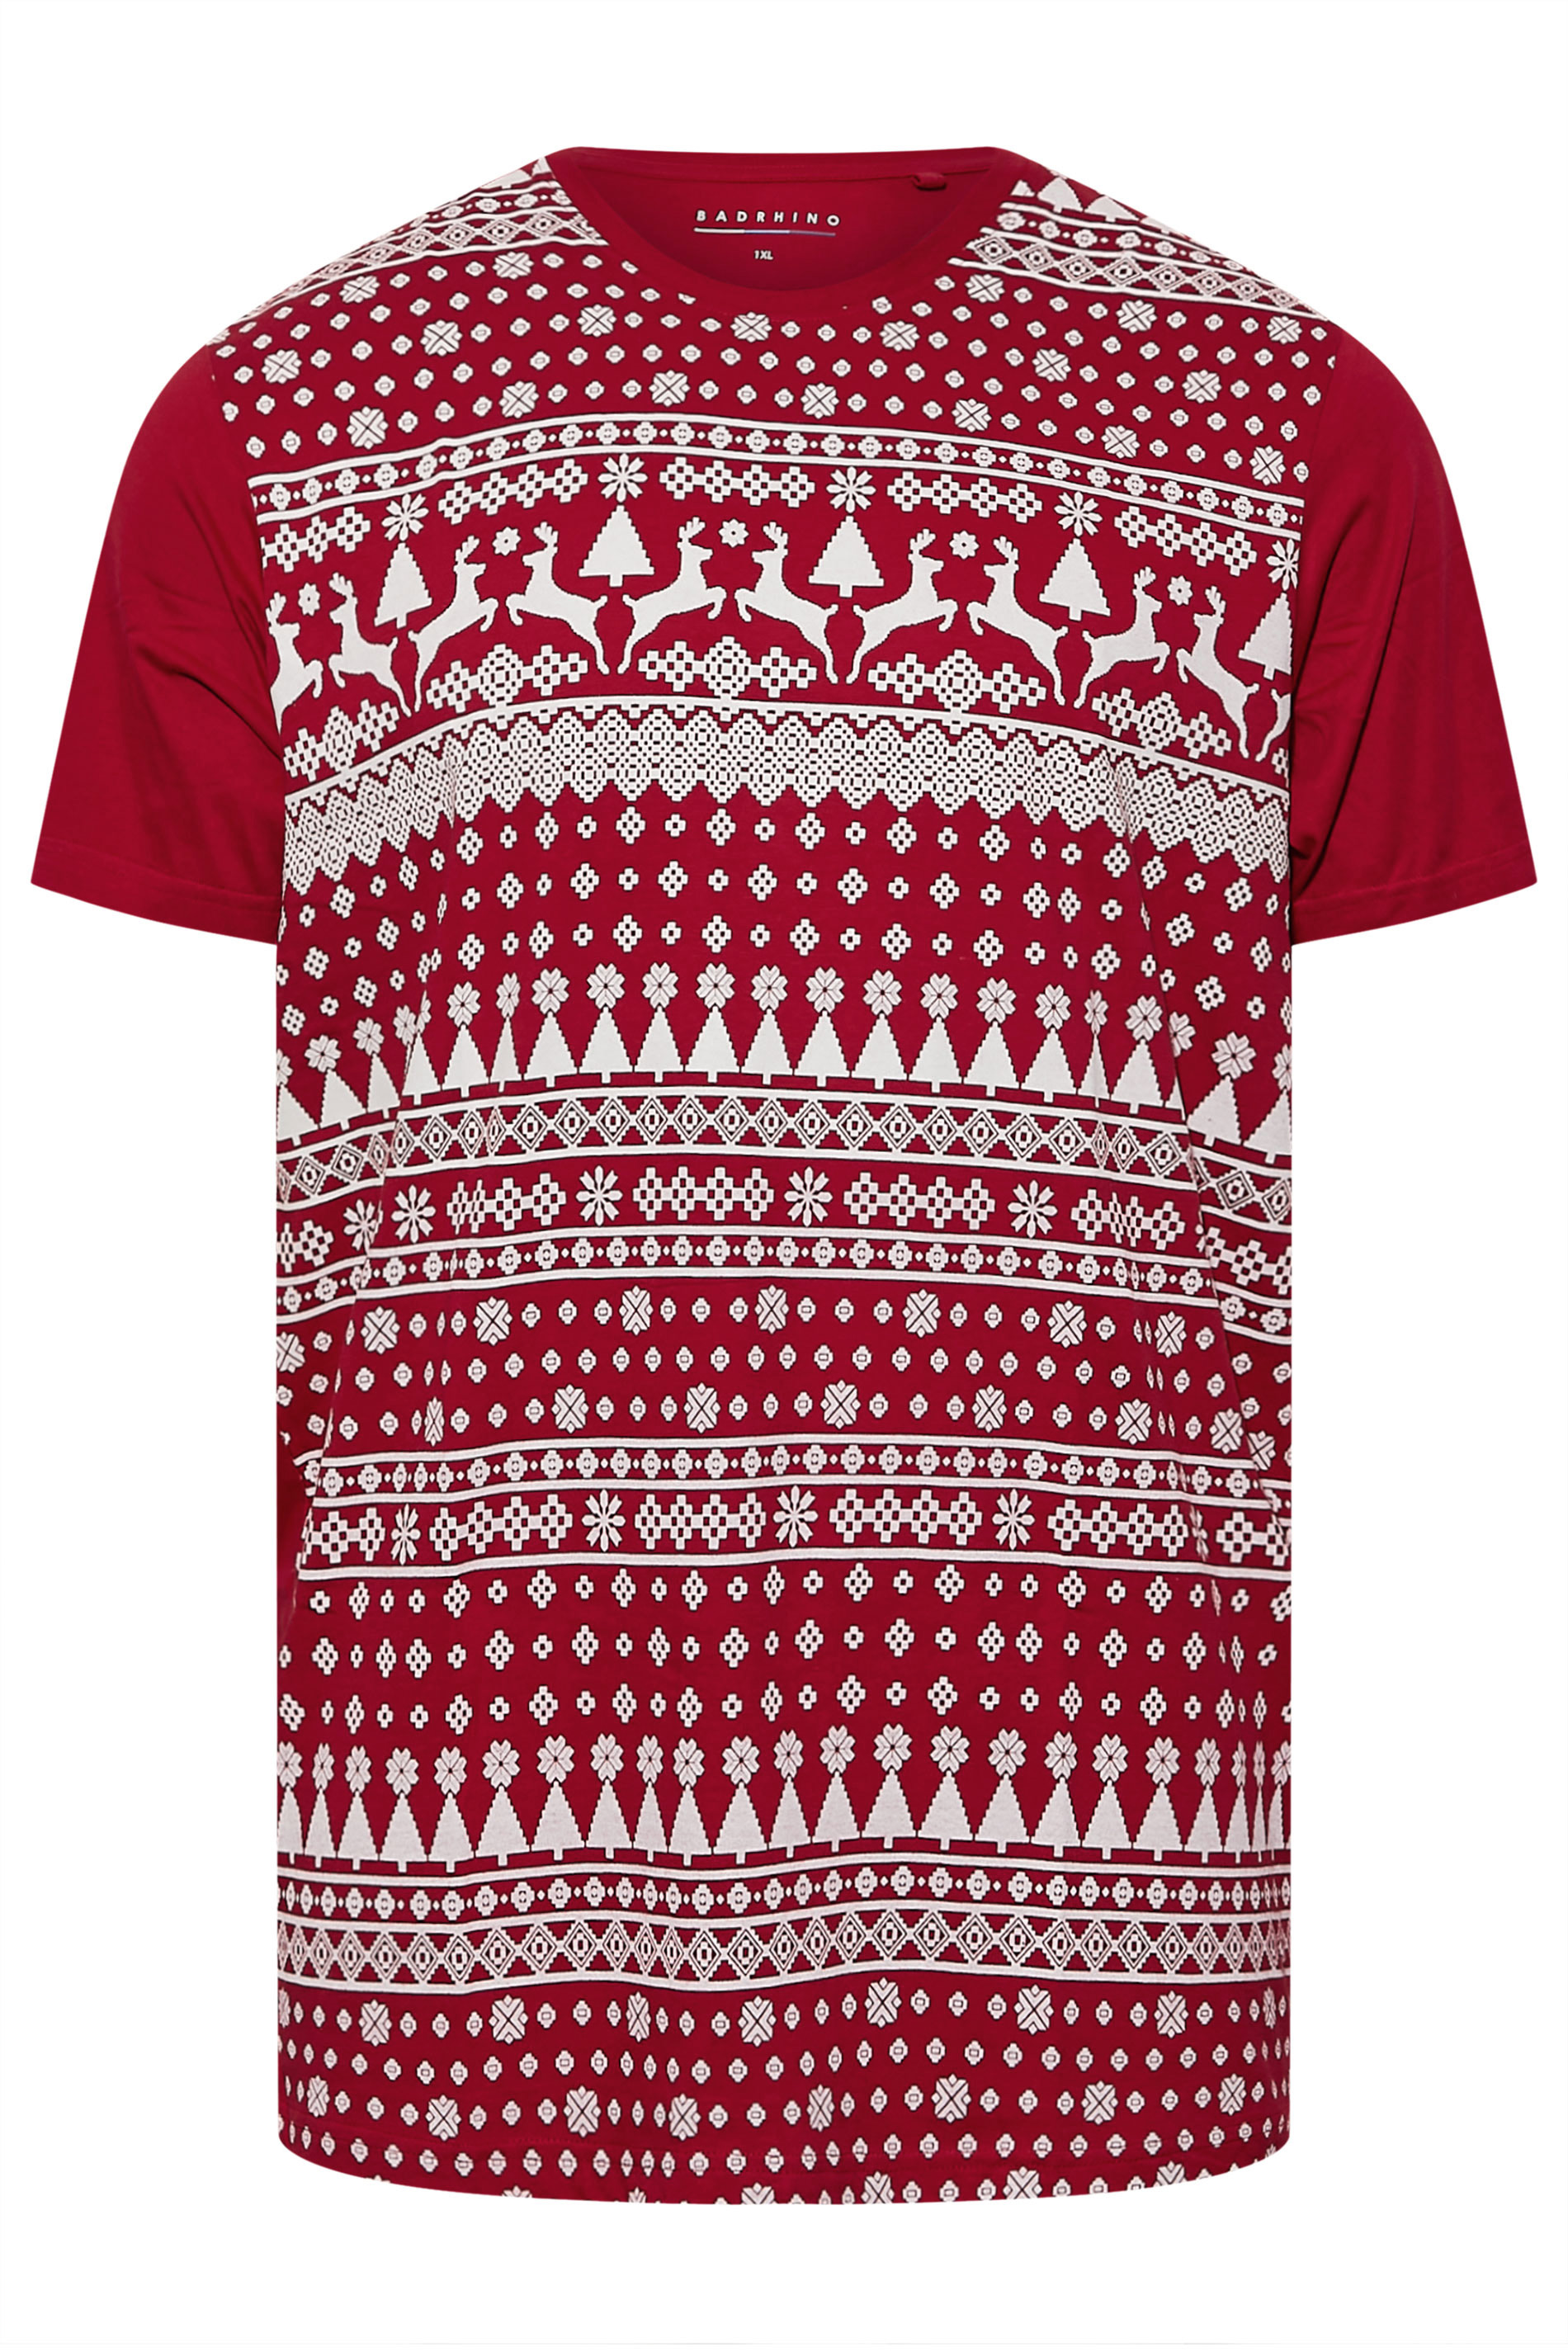 BadRhino Big & Tall Red & White Fairlise Christmas T-Shirt | BadRhino 3